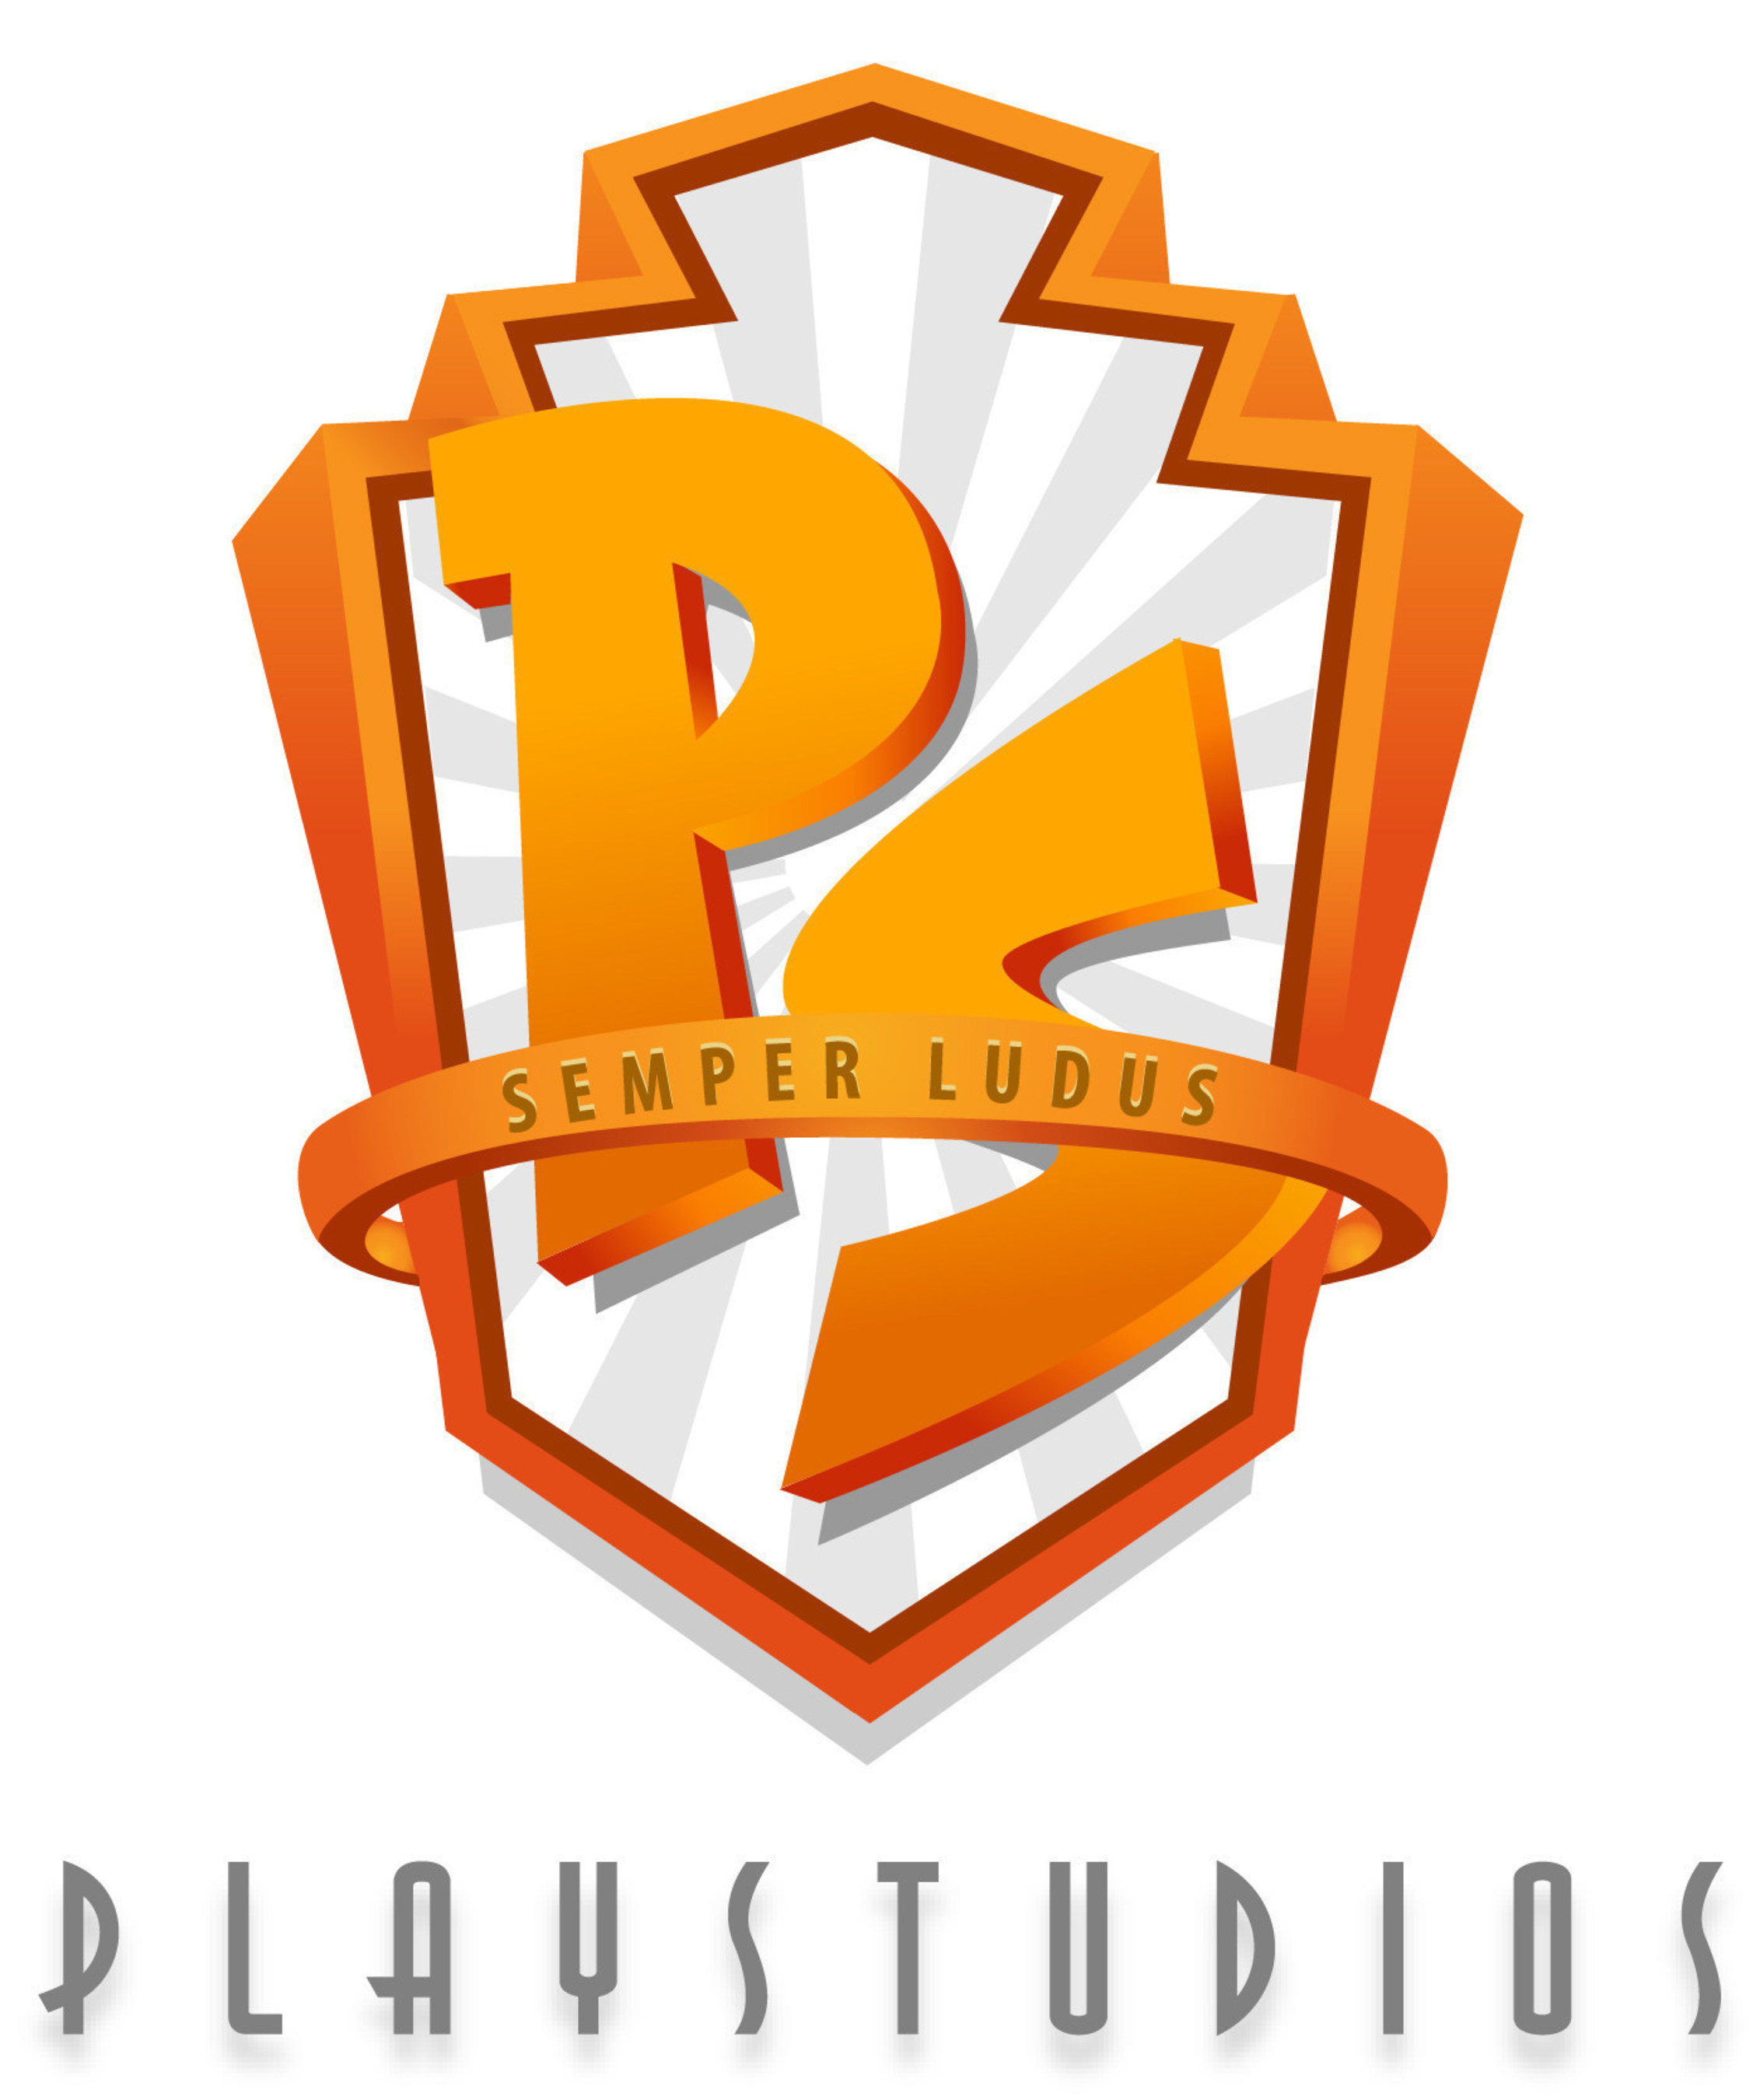 PLAYSTUDIOS logo (PRNewsFoto/PLAYSTUDIOS)